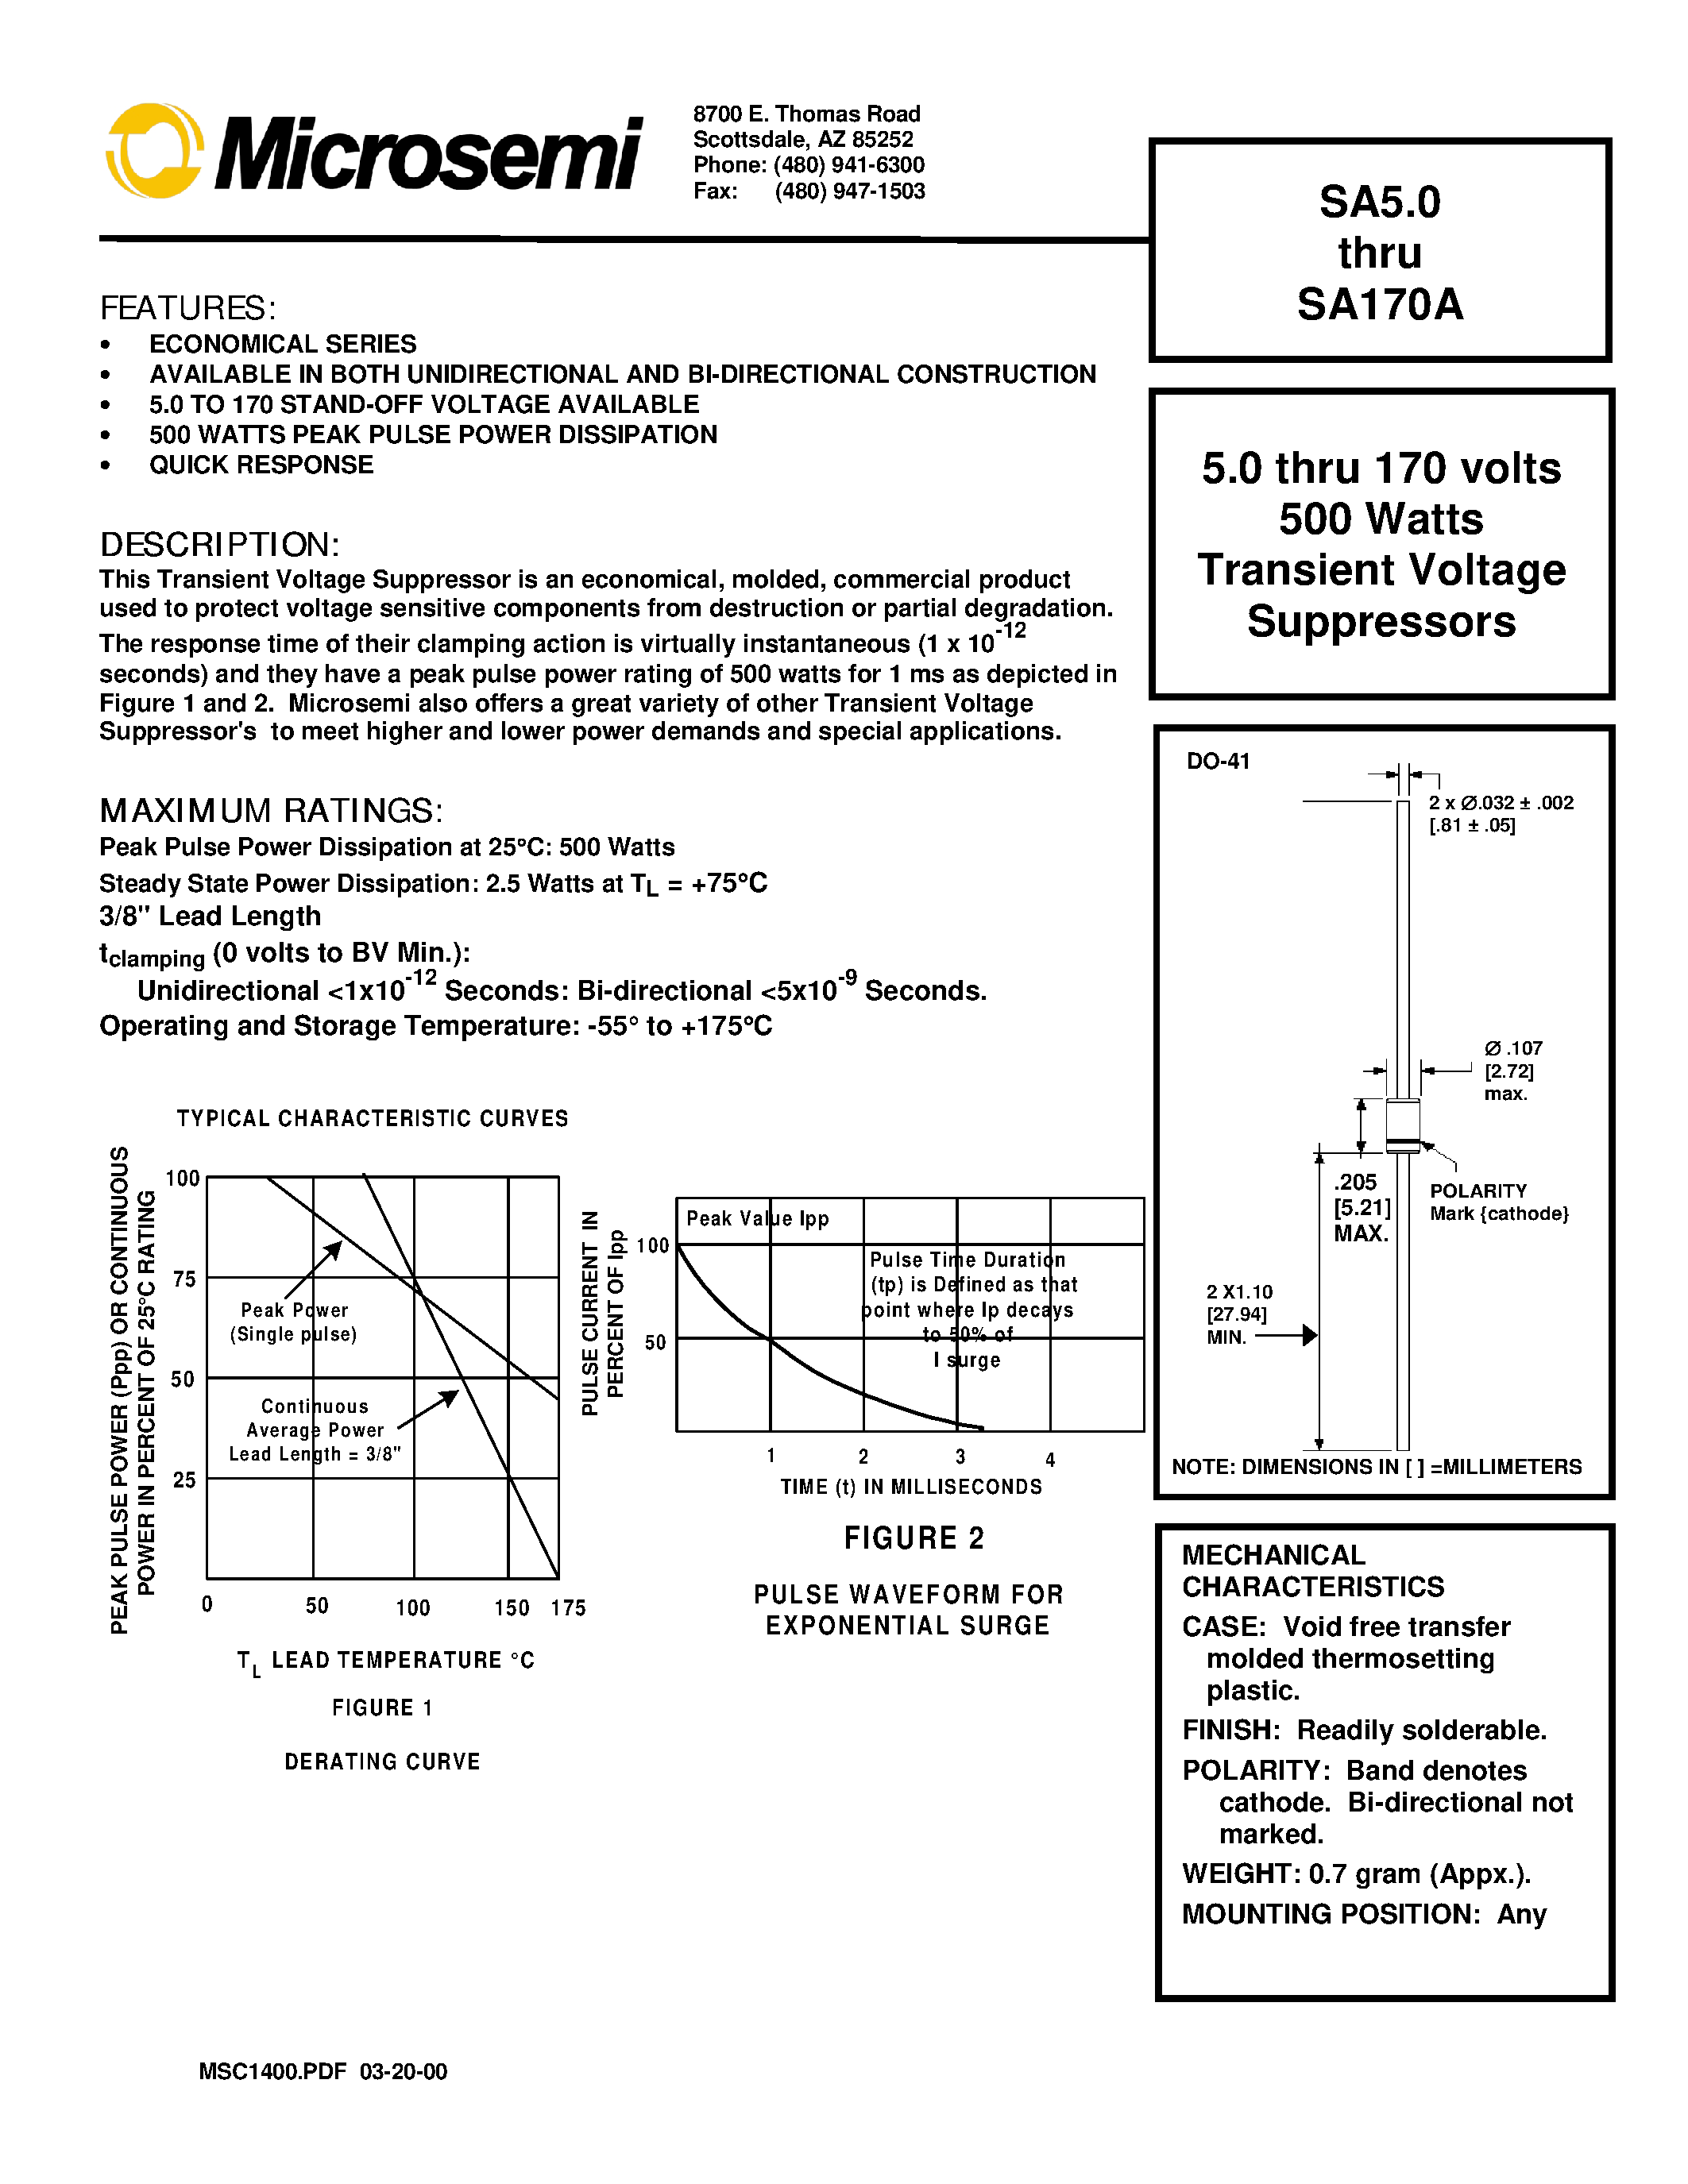 Datasheet SA20 - 5.0 thru 170 volts 500 Watts Transient Voltage Suppressors page 1